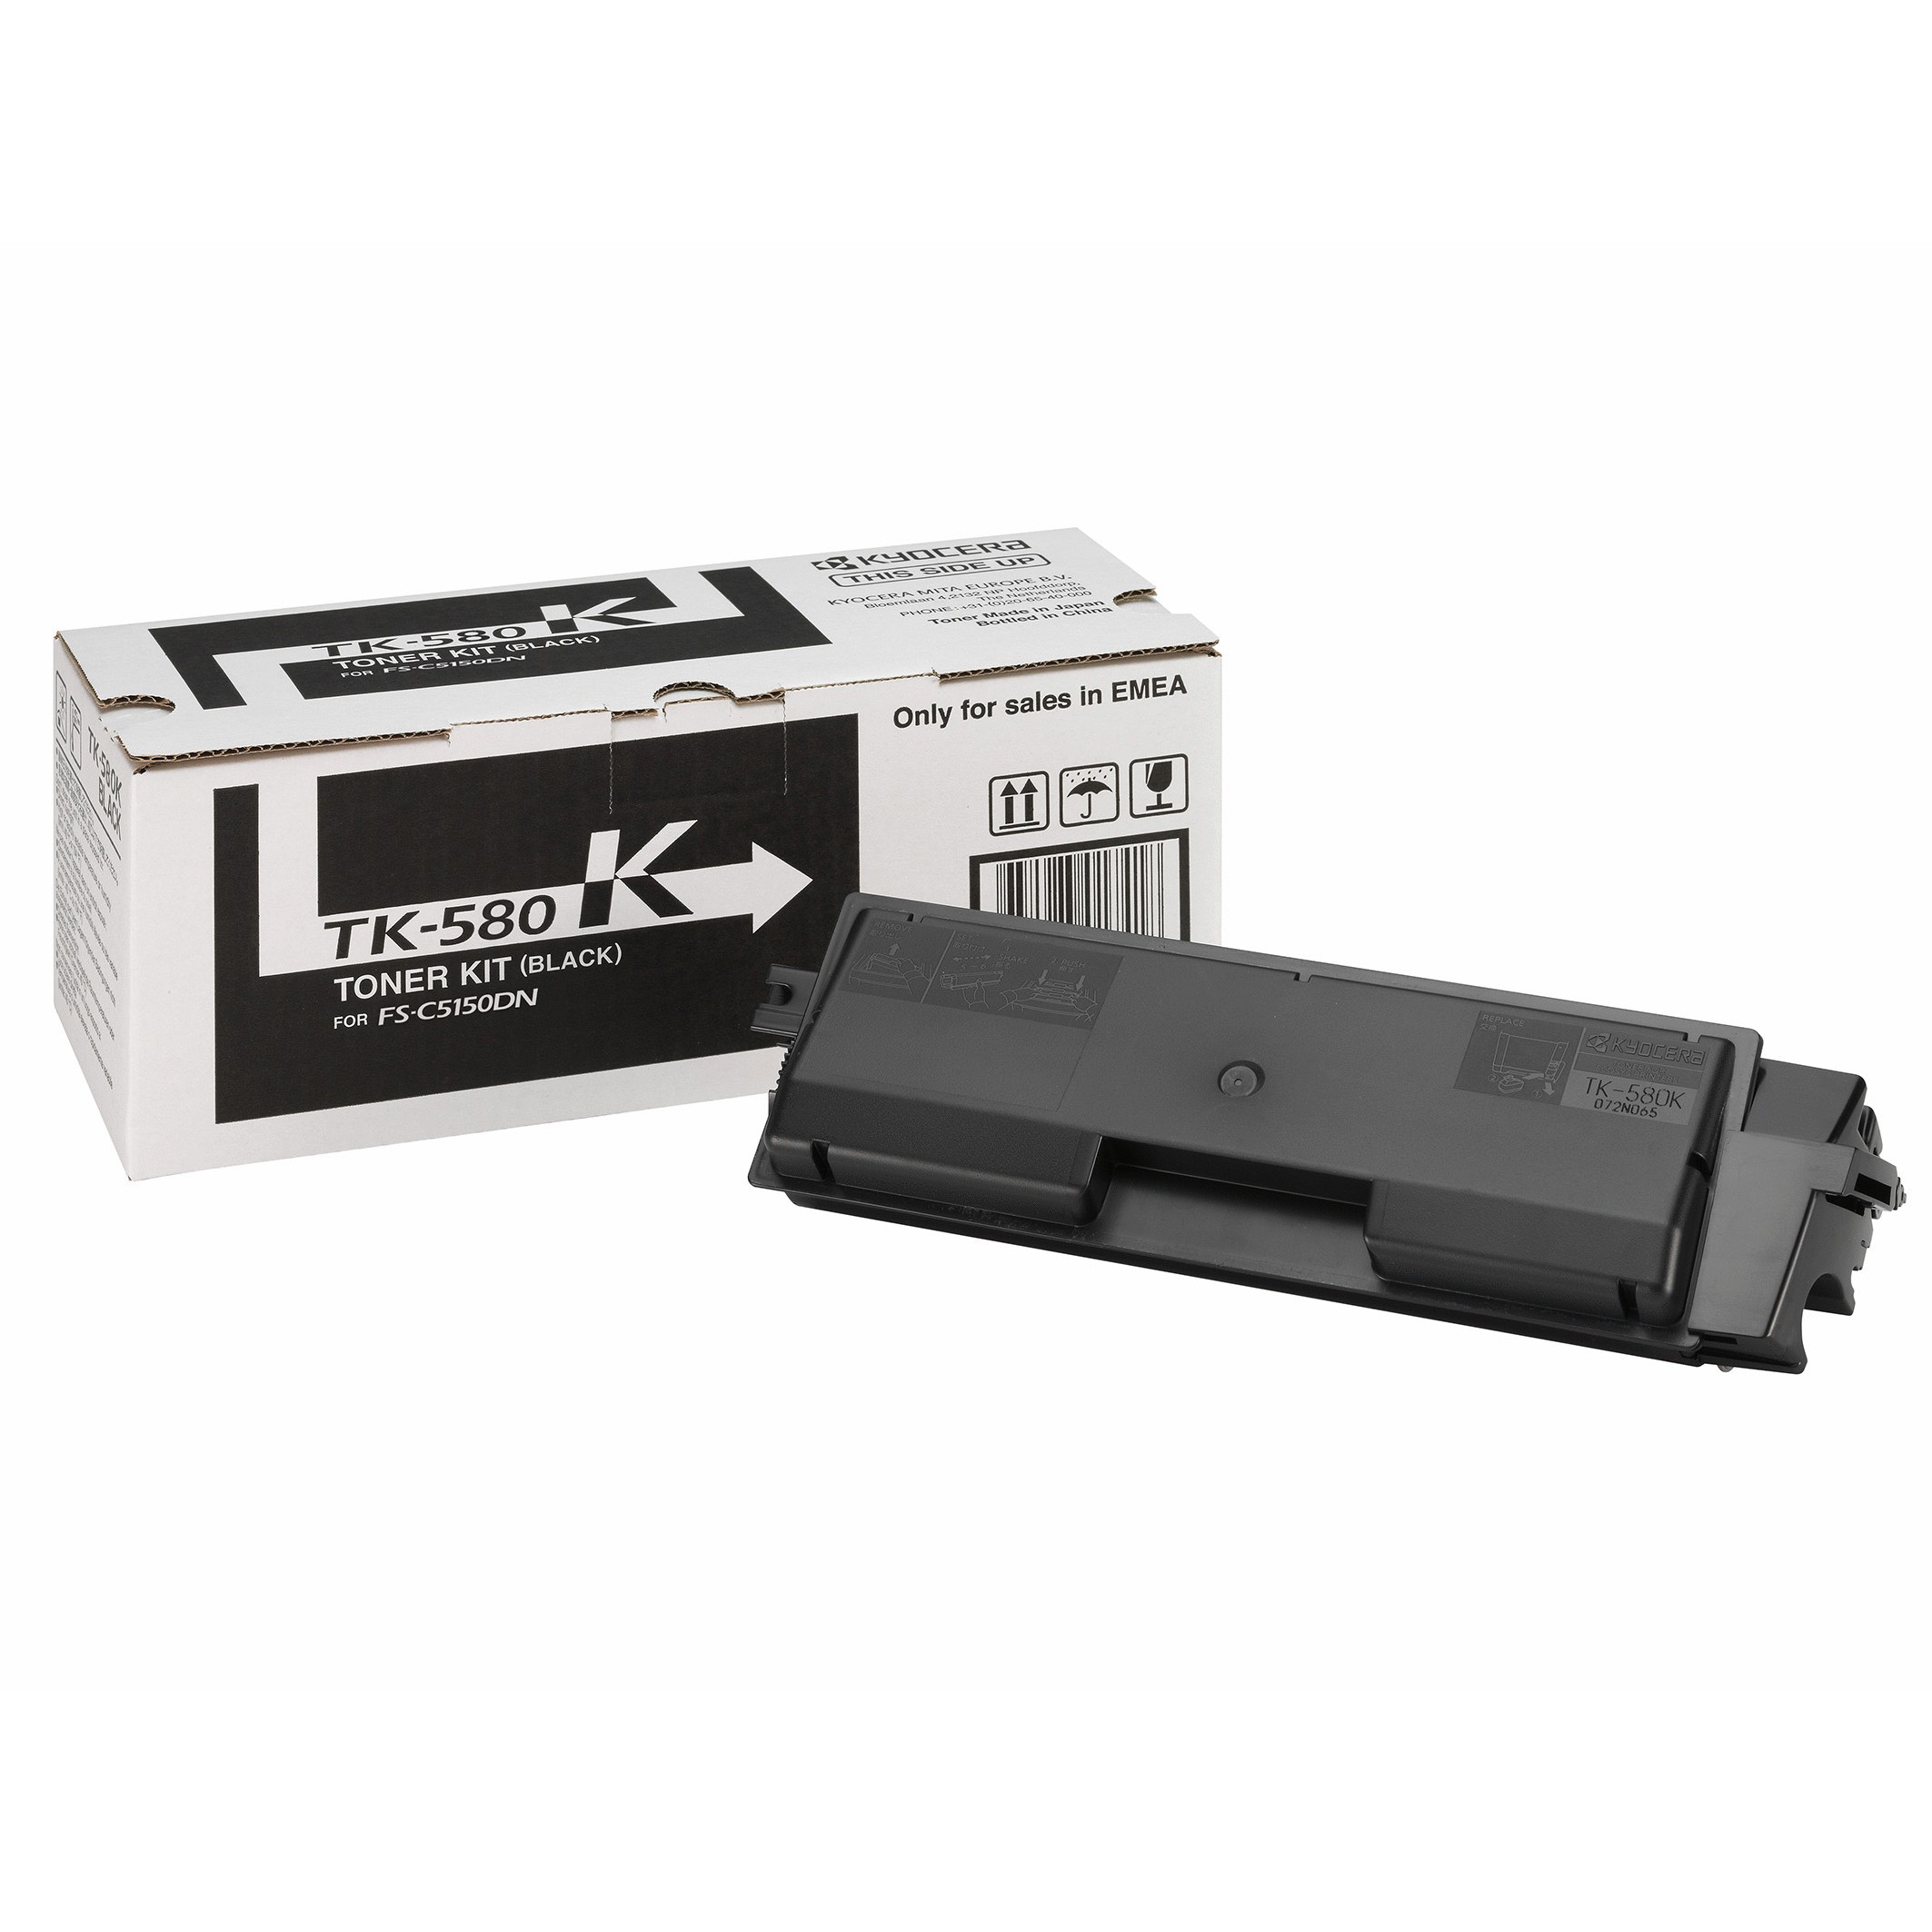 KYOCERA TK-580K toner cartridge - 1T02KT0NL0